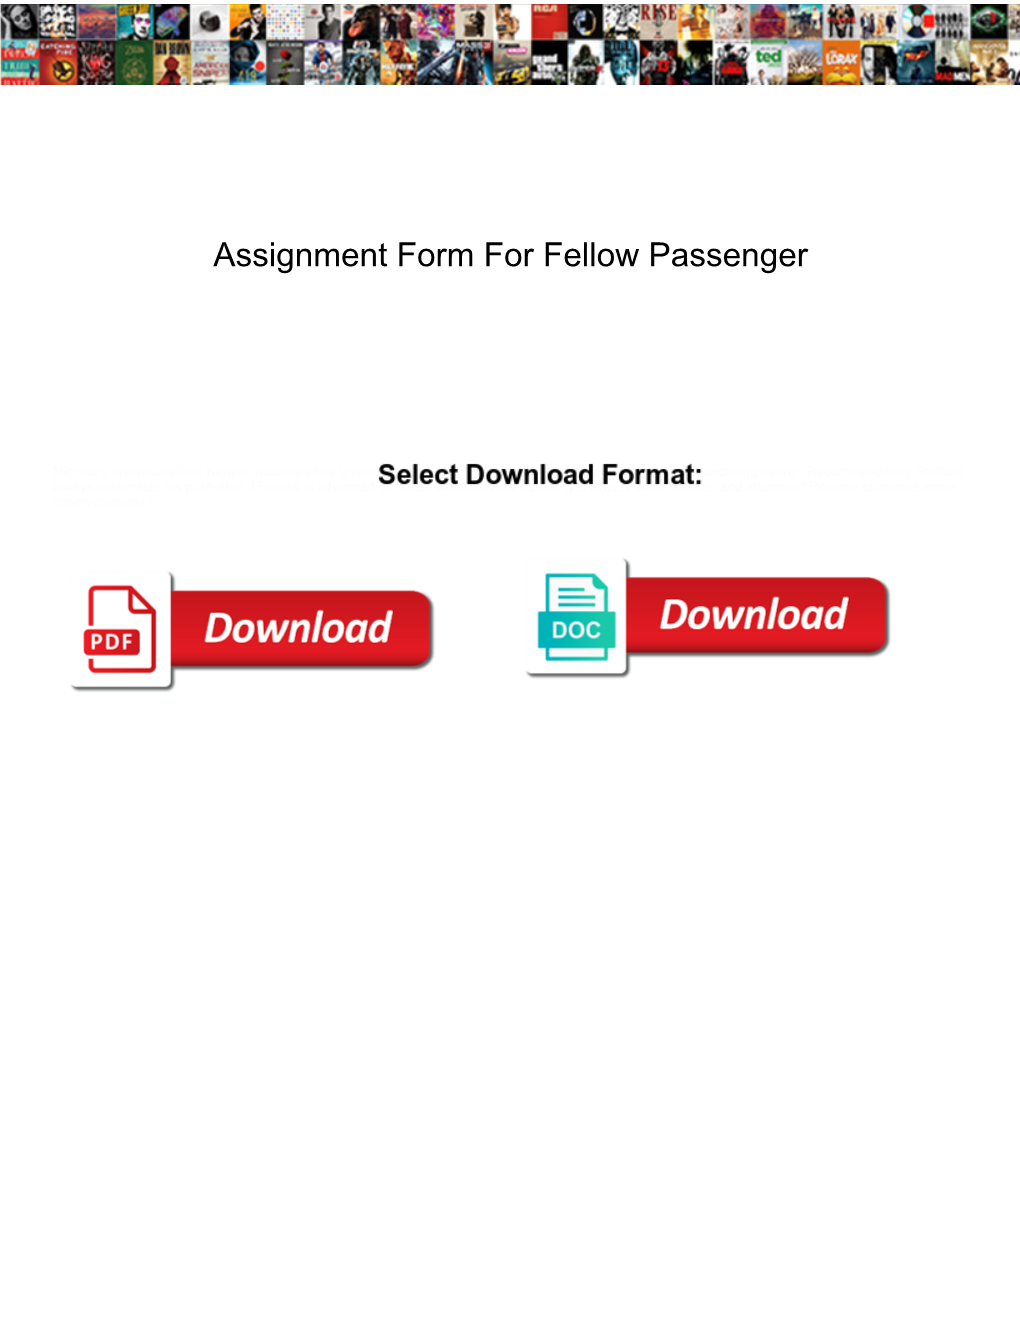 Assignment Form for Fellow Passenger